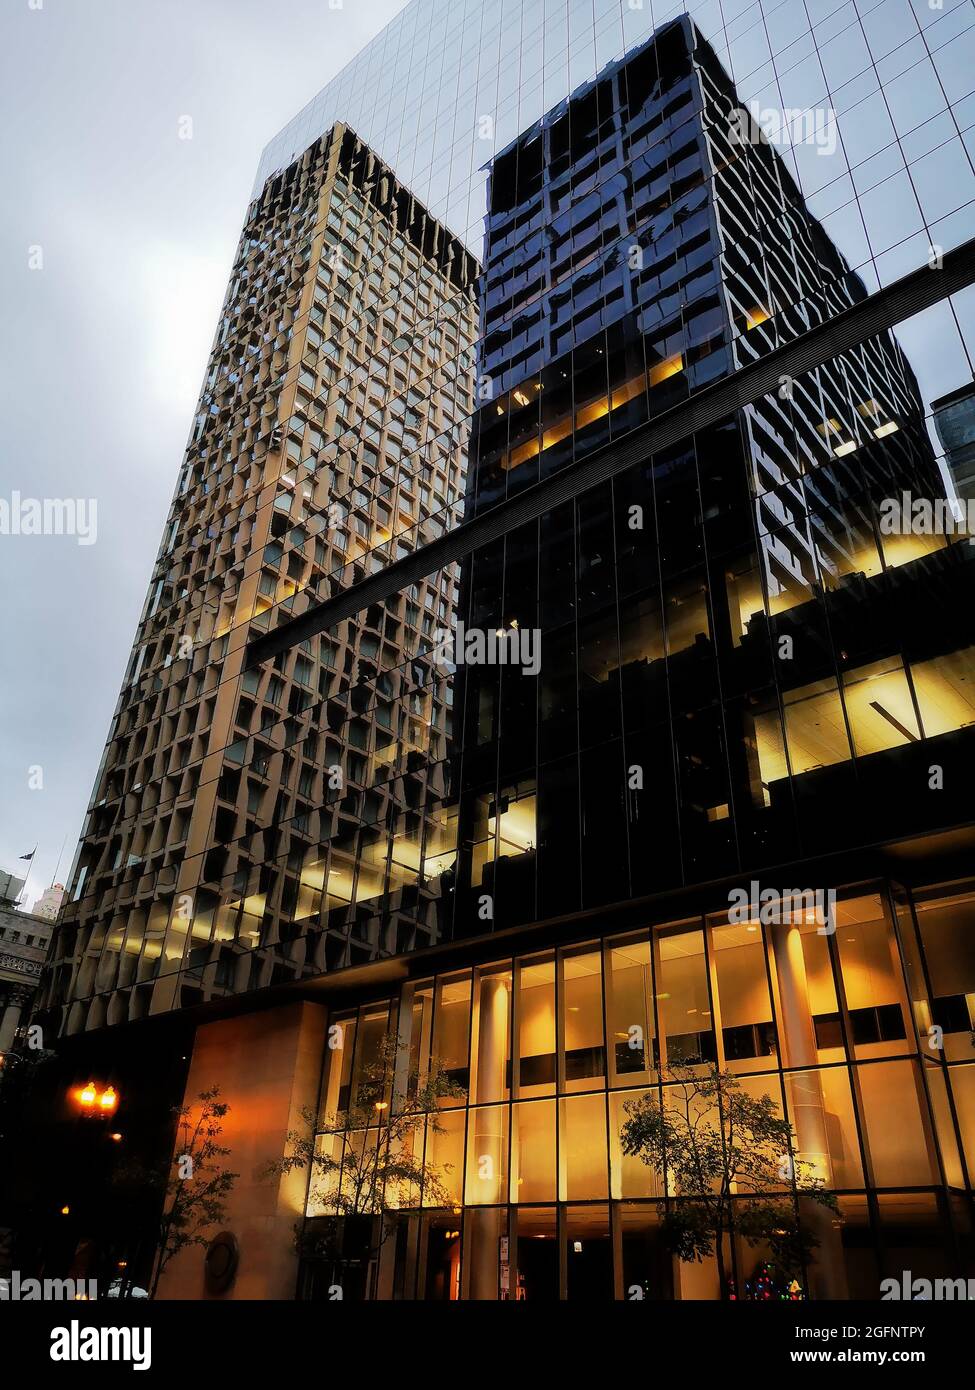 Reflet créatif de deux immeubles de bureaux dans un gratte-ciel d'appartements en verre dans le centre-ville de Chicago Banque D'Images